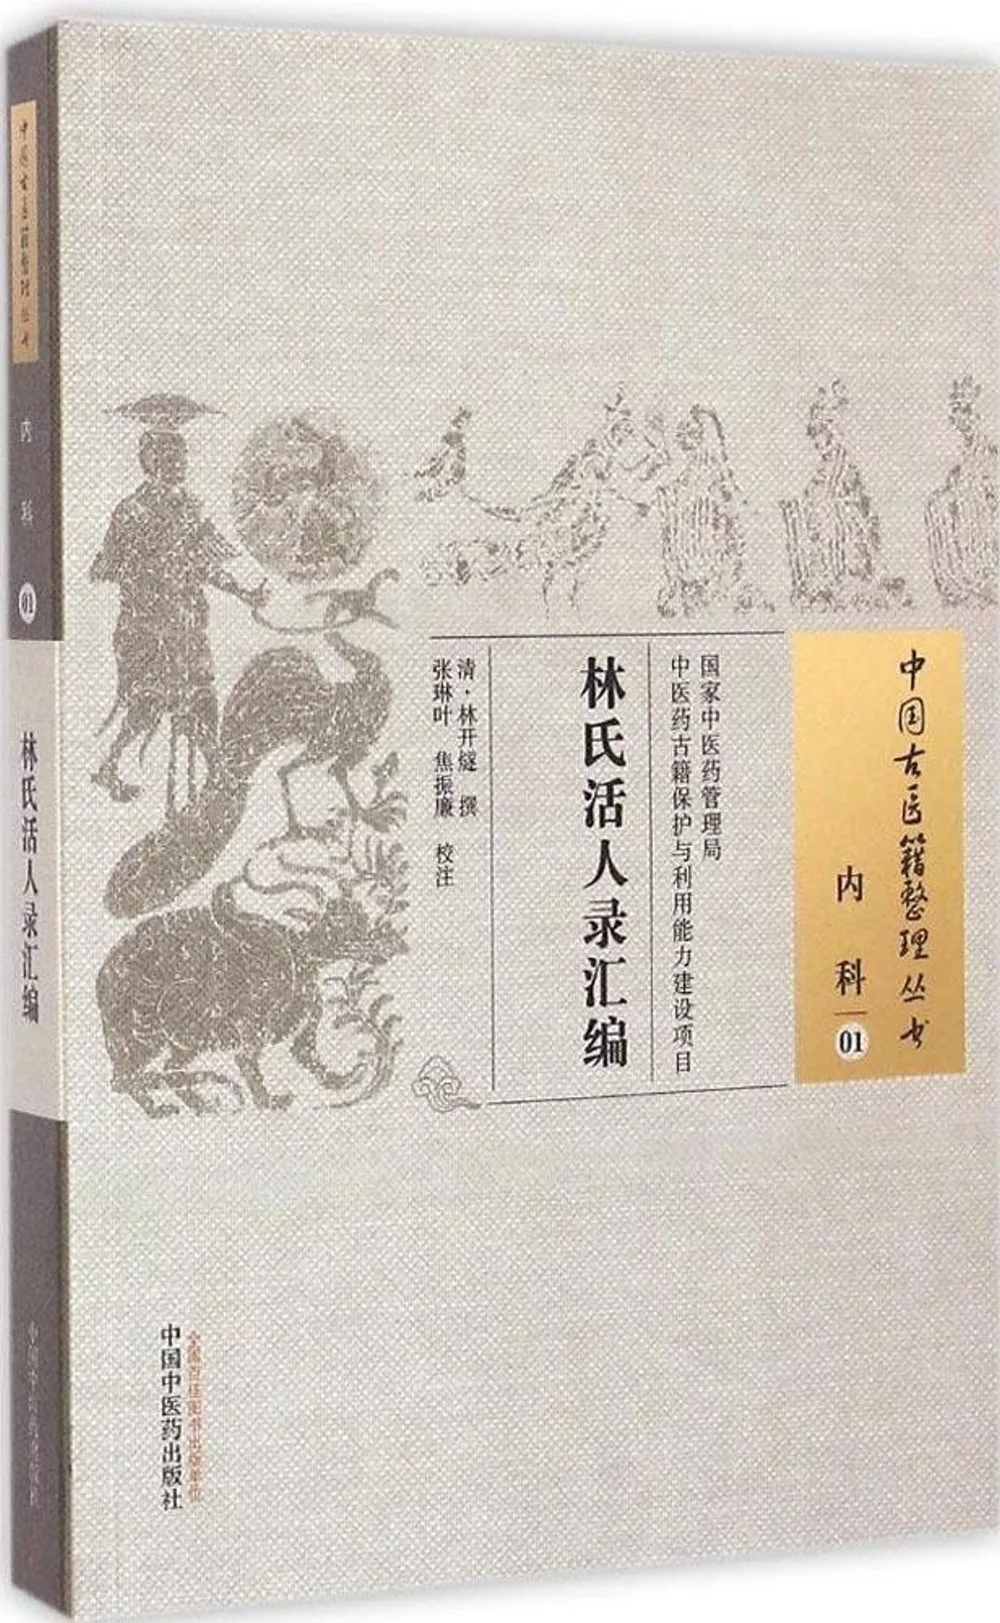 中國古醫籍整理叢書.內科 01：林氏活人錄匯編